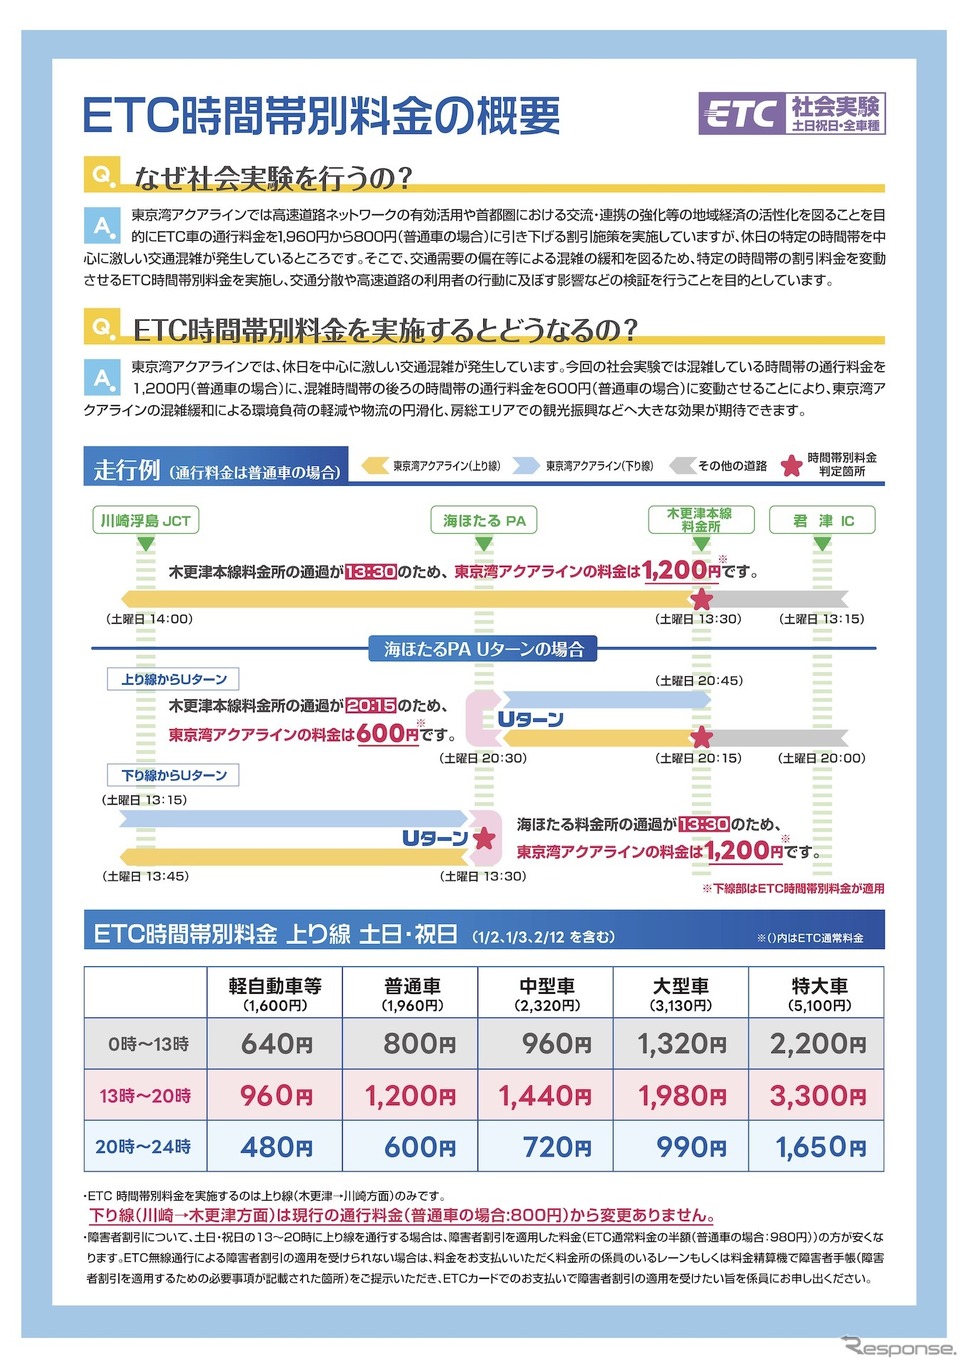 東京湾アクアライン上り線におけるETC時間帯別料金の実施について《画像提供 国土交通省》